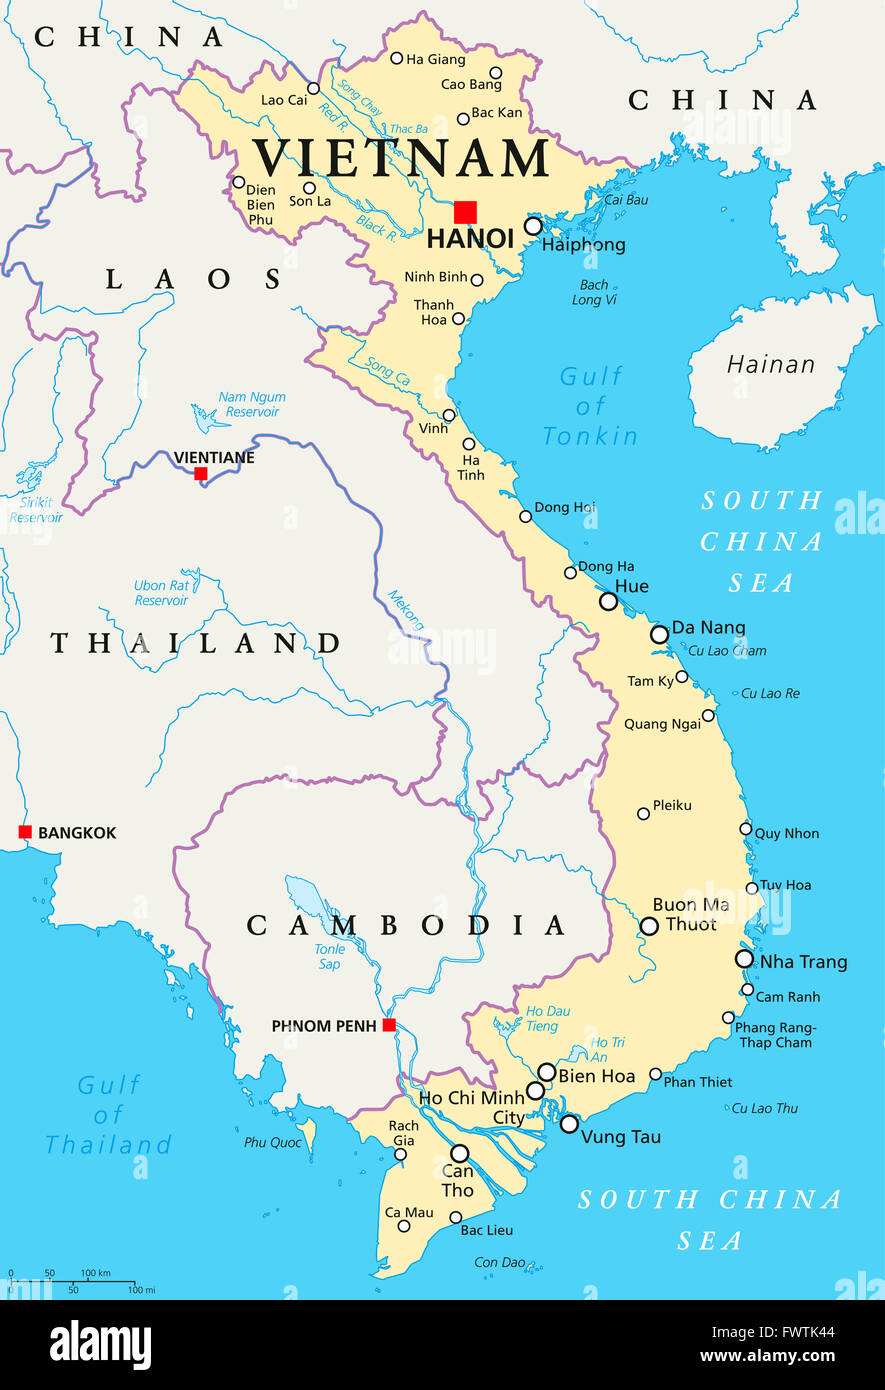 Vietnam mappa politico con capitale Hanoi, confini nazionali importanti città, fiumi e laghi. Etichetta inglese e la scala. Foto Stock